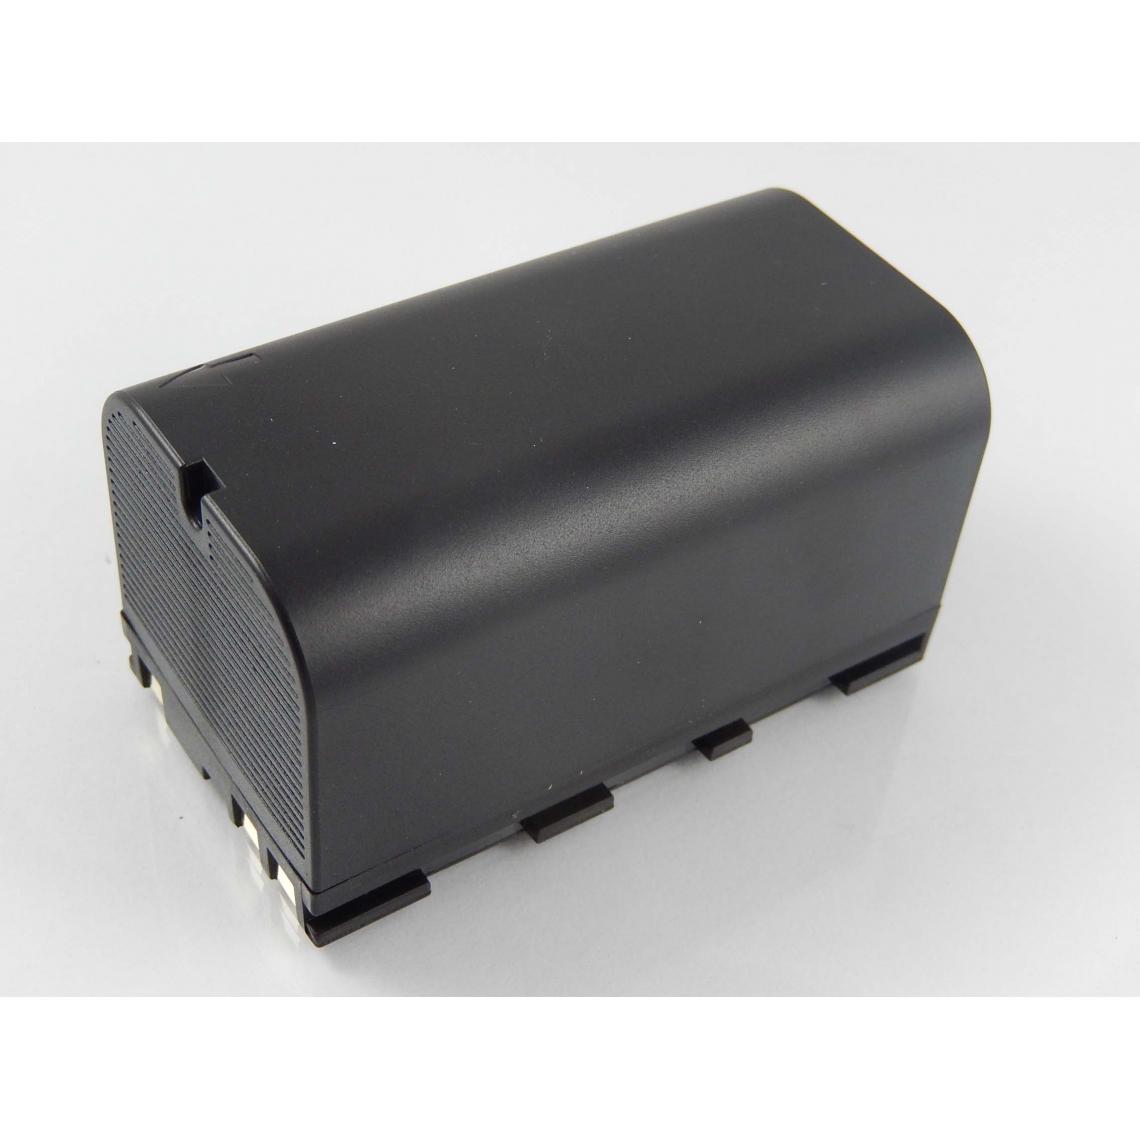 Vhbw - vhbw Batterie compatible avec Leica GNSS receiver, GPS1200 dispositif de mesure laser, outil de mesure (5600mAh, 7,4V, Li-ion) - Piles rechargeables